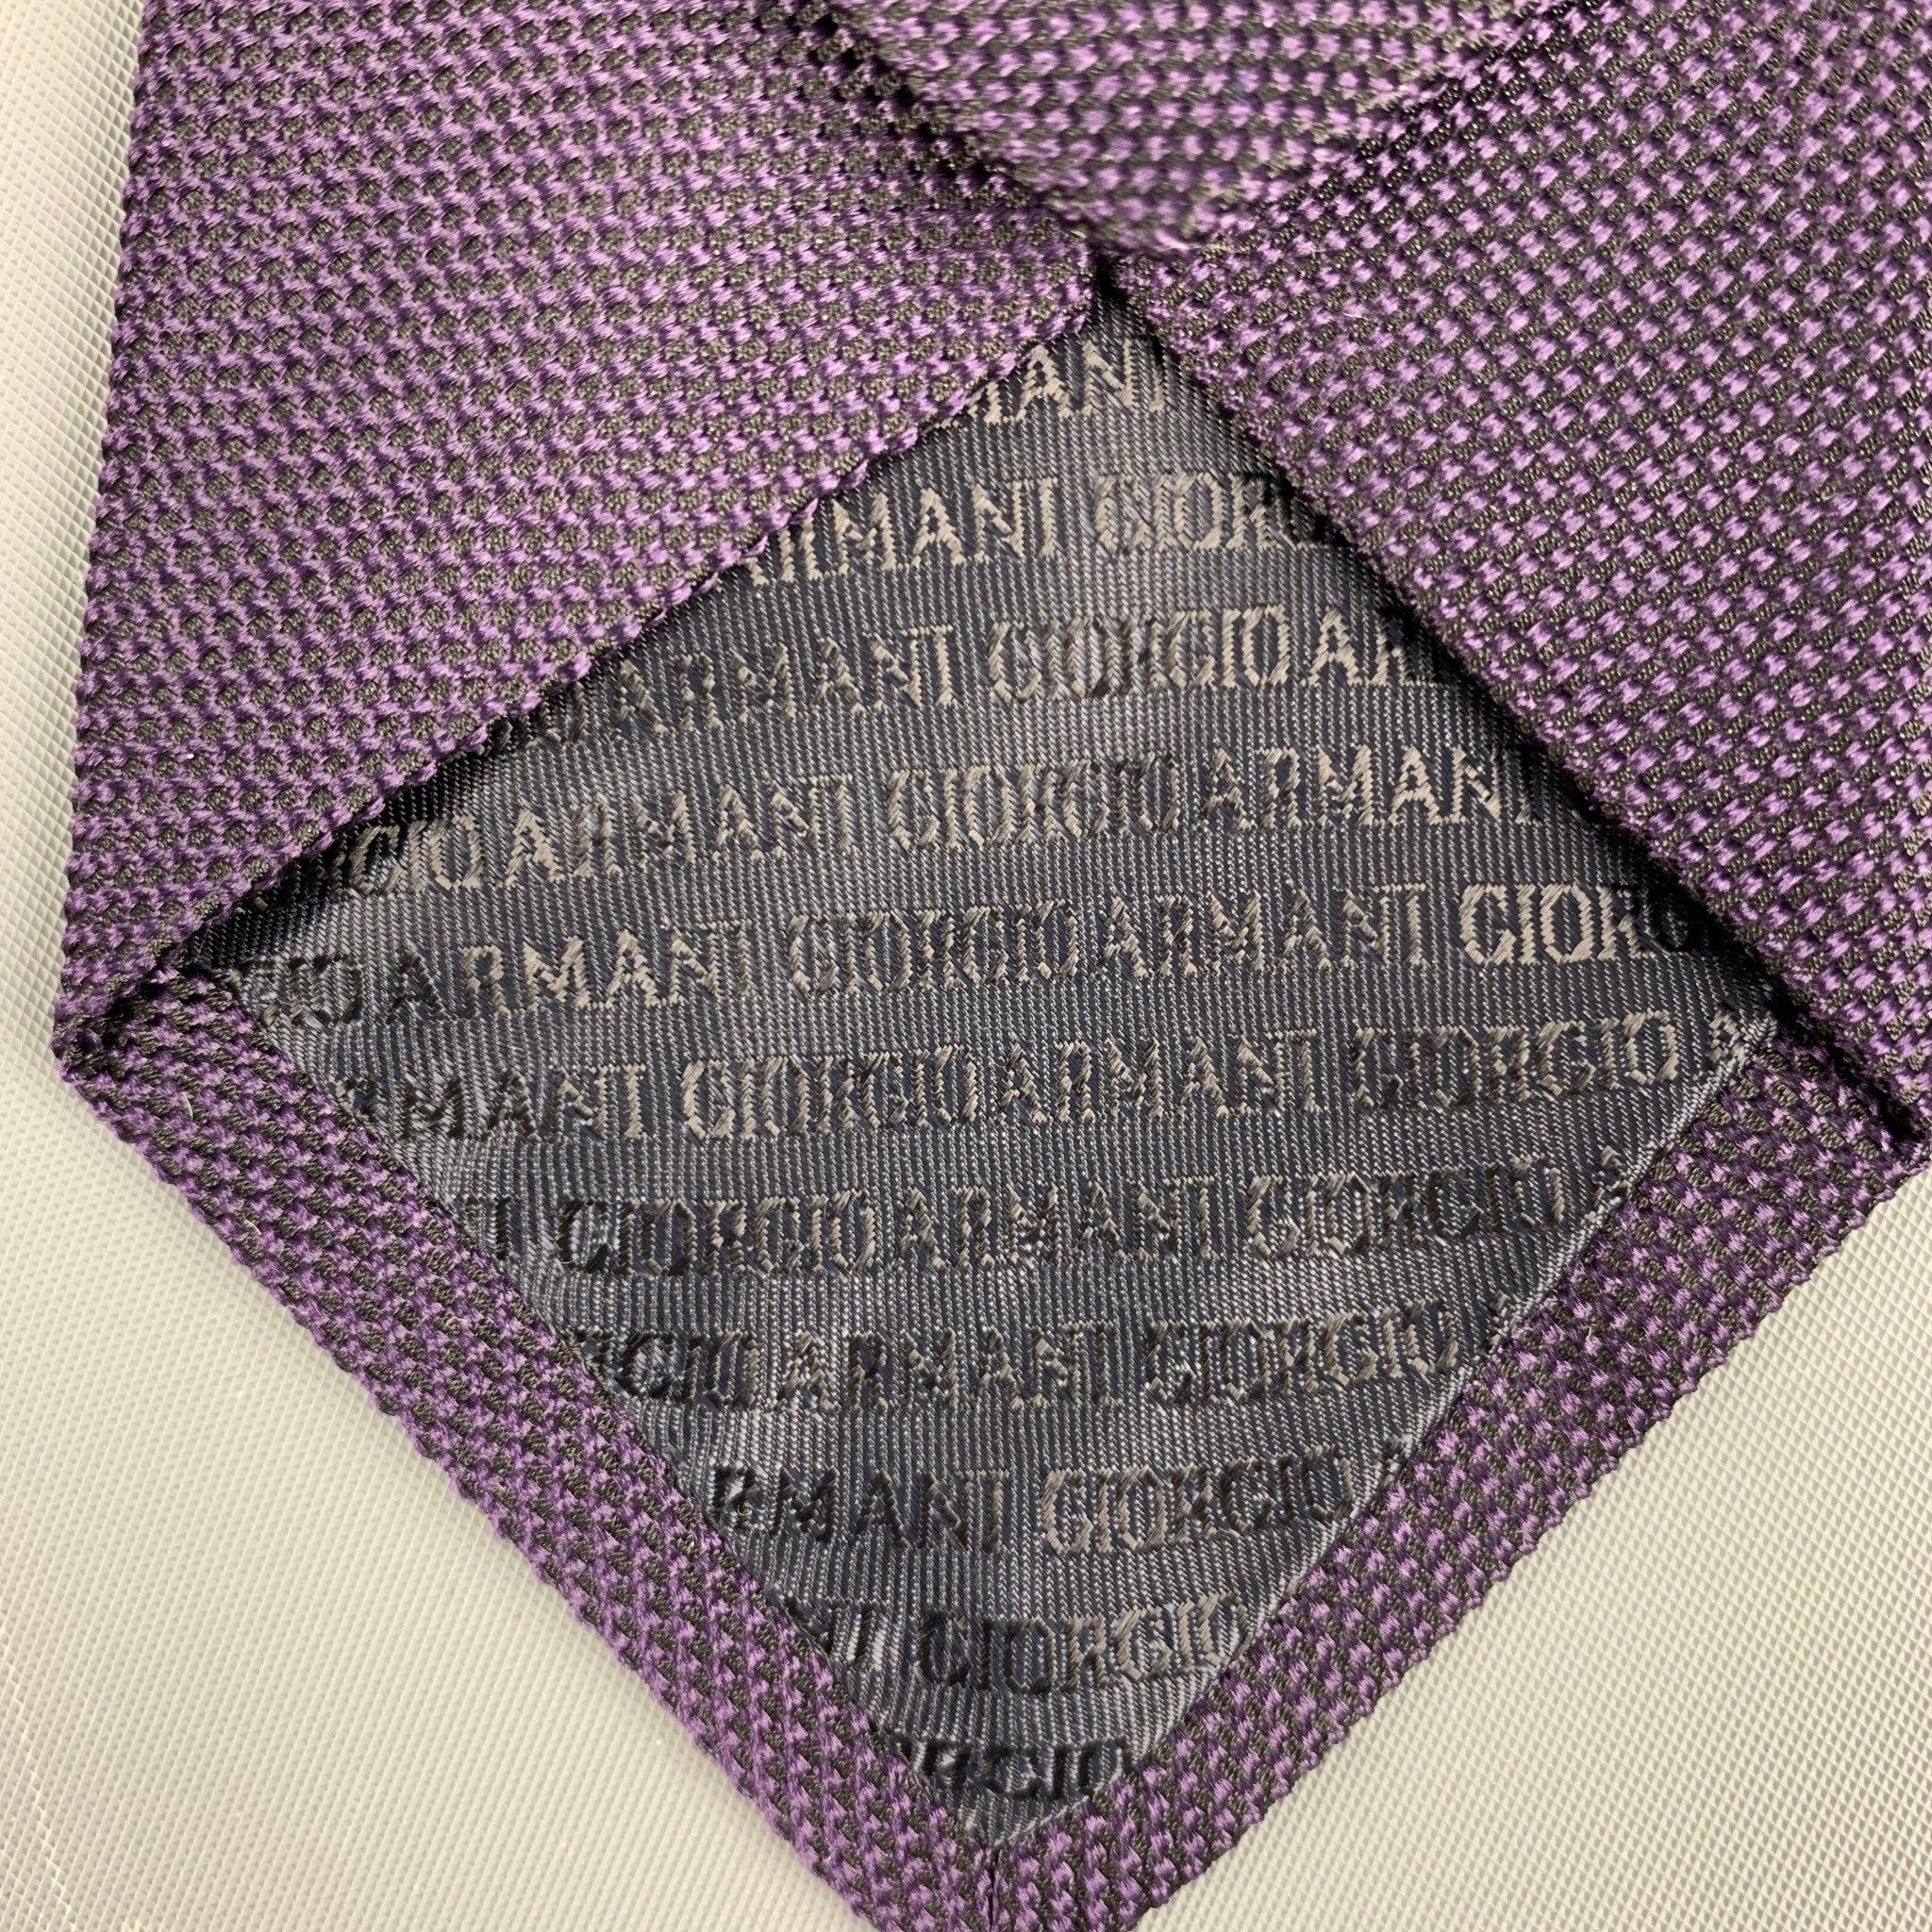 GIORGIO ARMANI Purple Black Textured Silk Tie For Sale 1